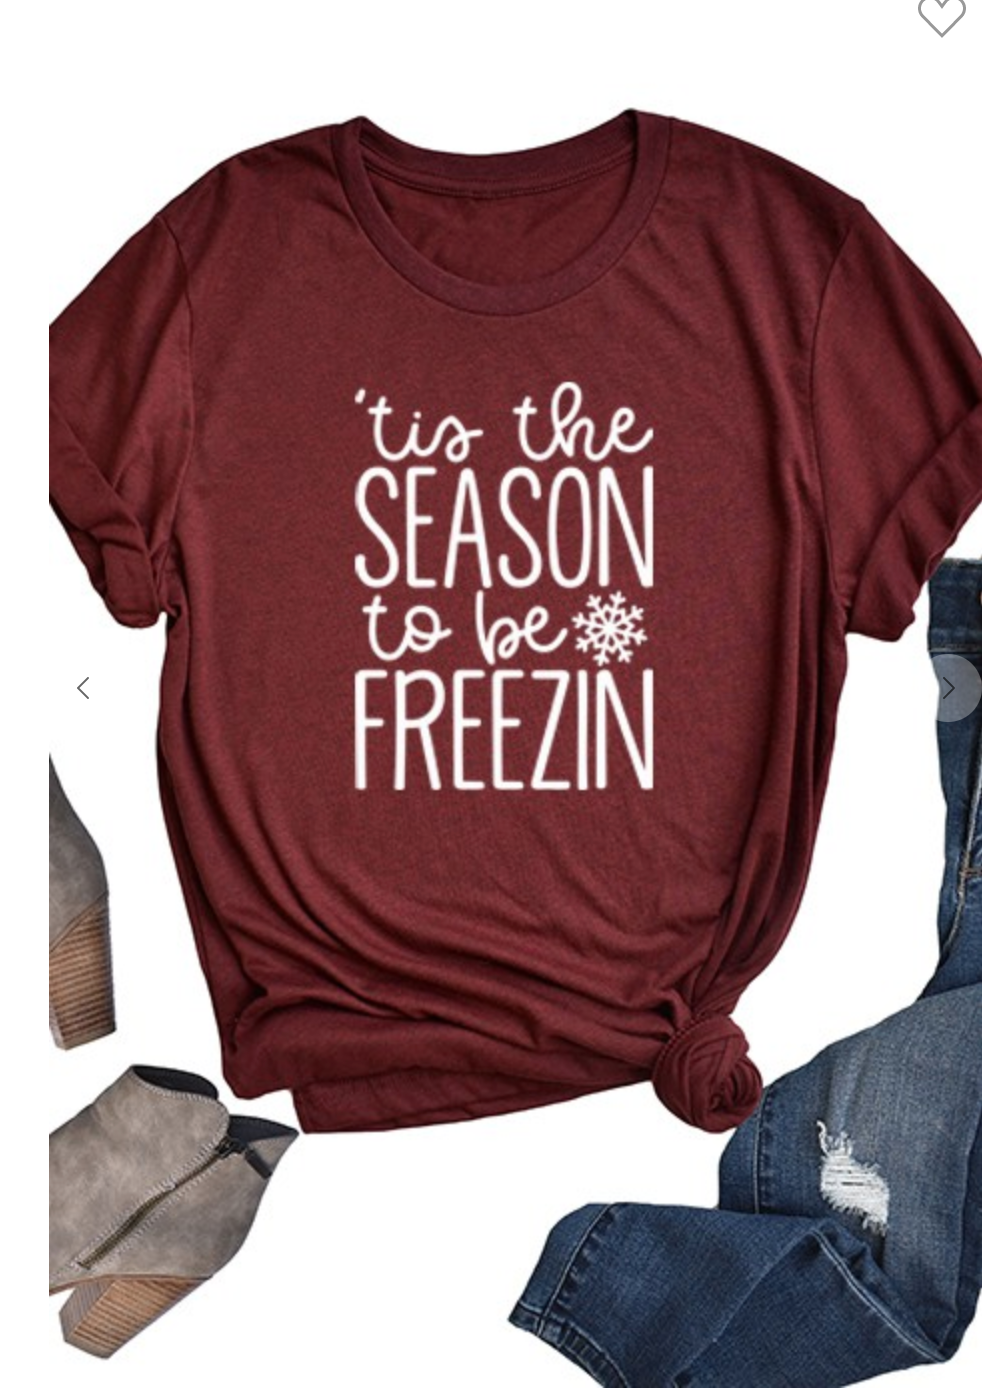 Tis the Season to Be Freezin Holiday Shirt